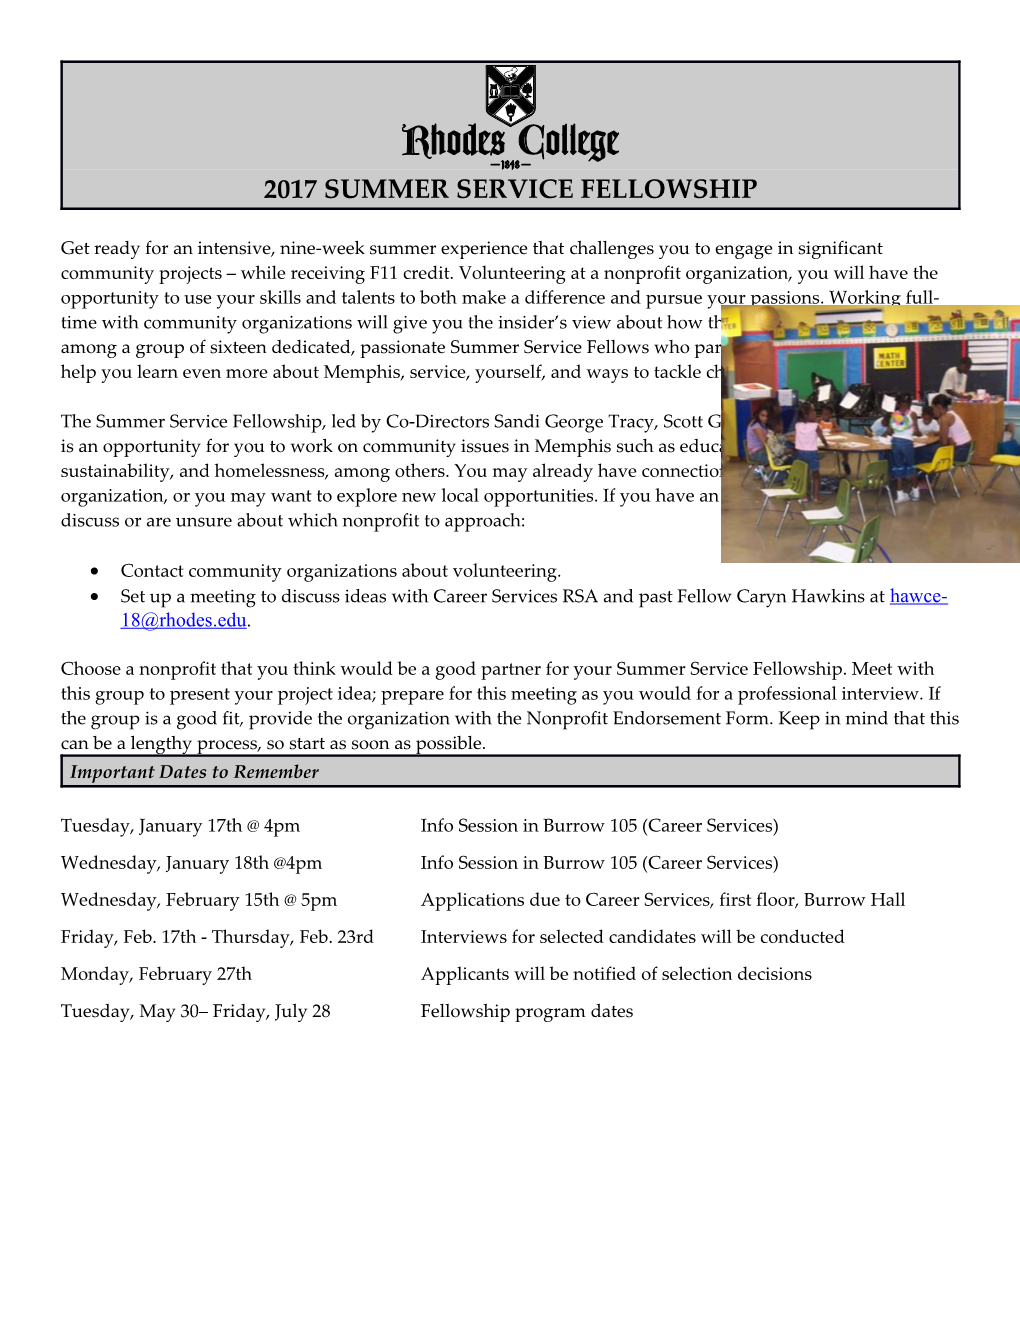 2007 Summer Service Fellowship Selection Process